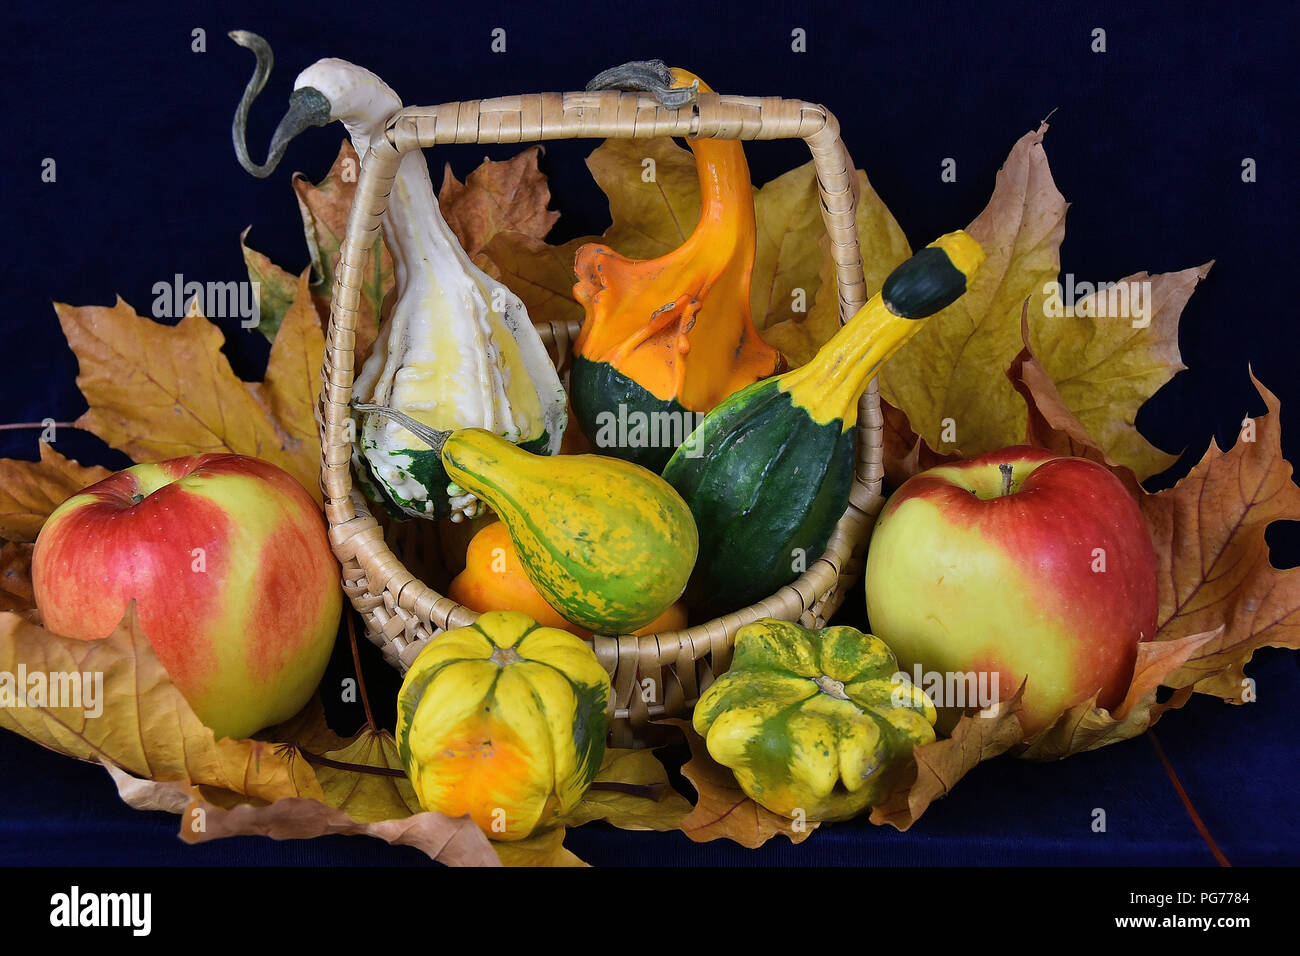 The autumn abundance Stock Photo